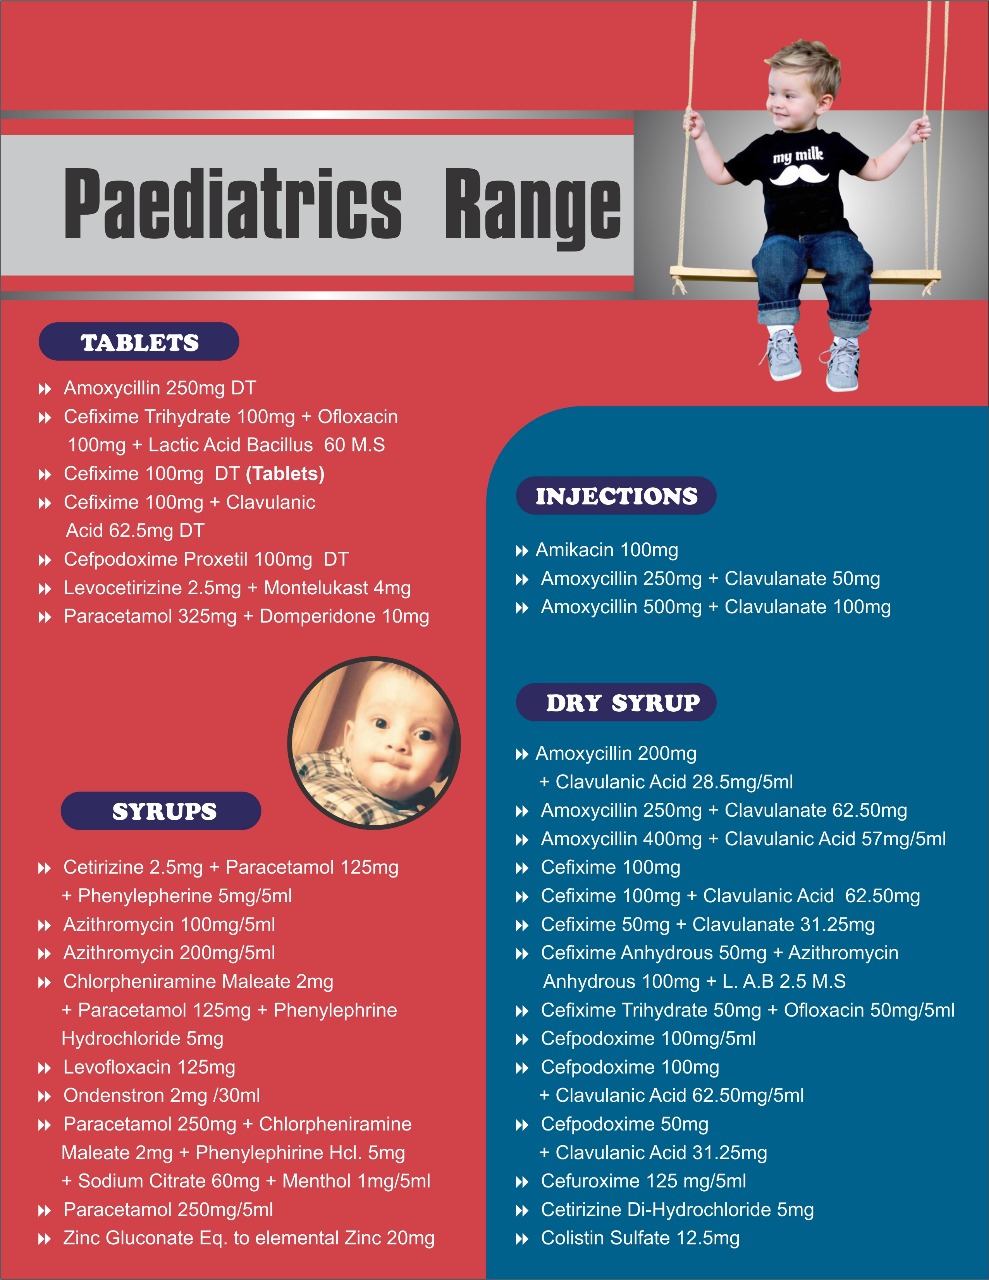 Pediatrics Range